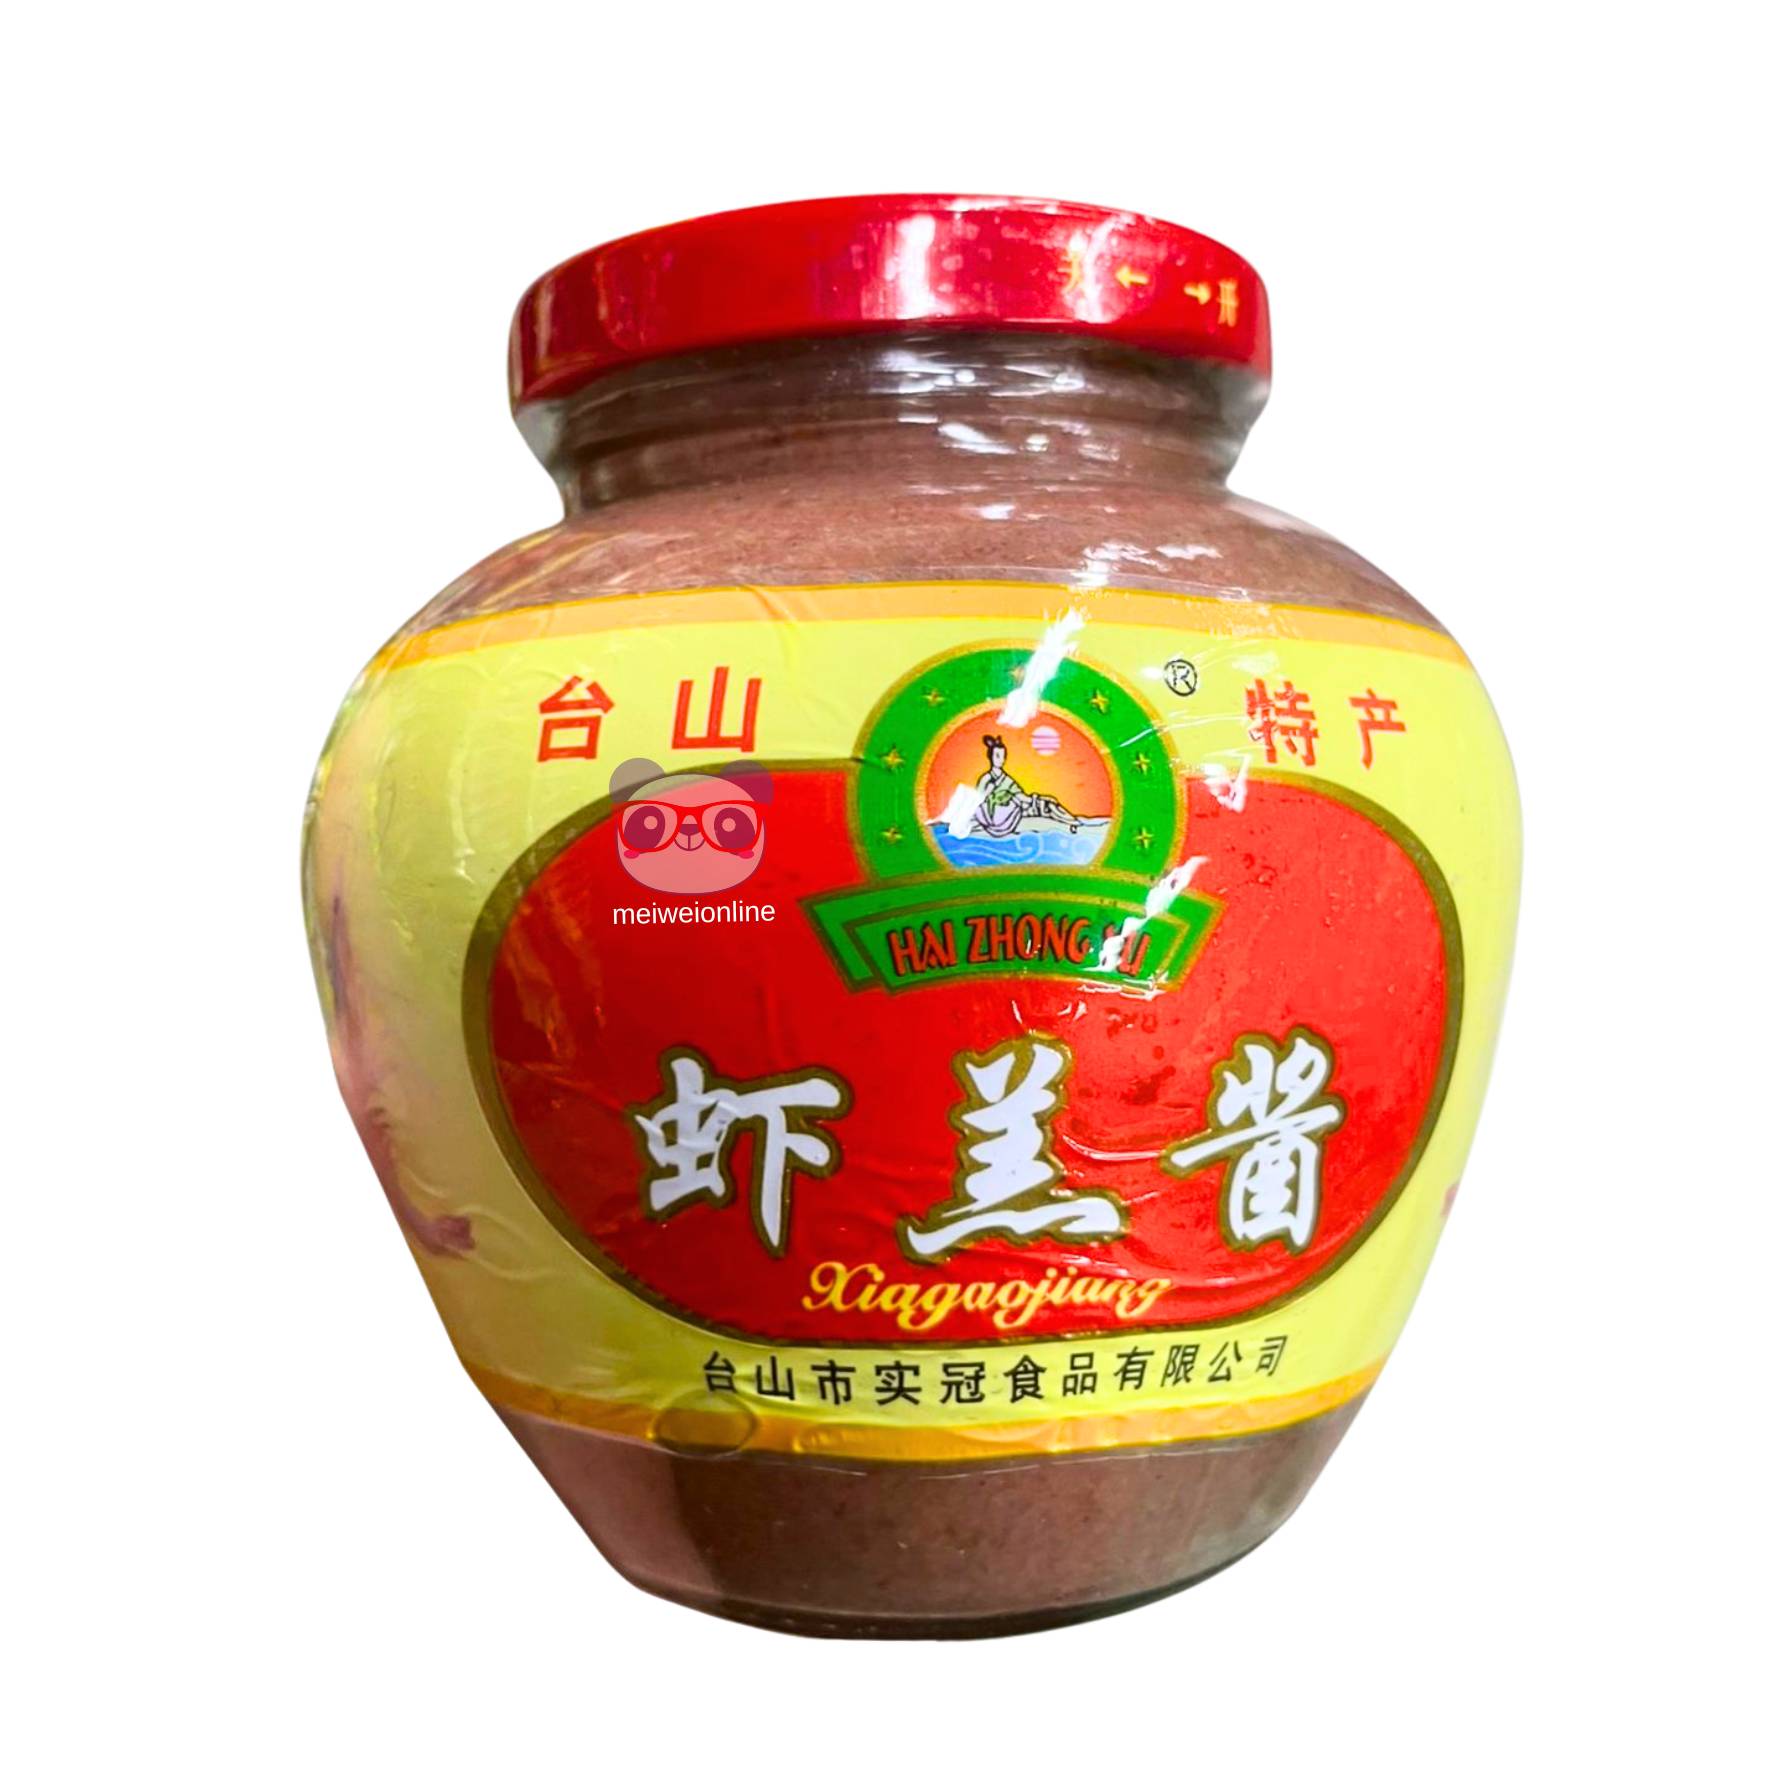 Pasta de camarão - Hai Zhong Yu 600g